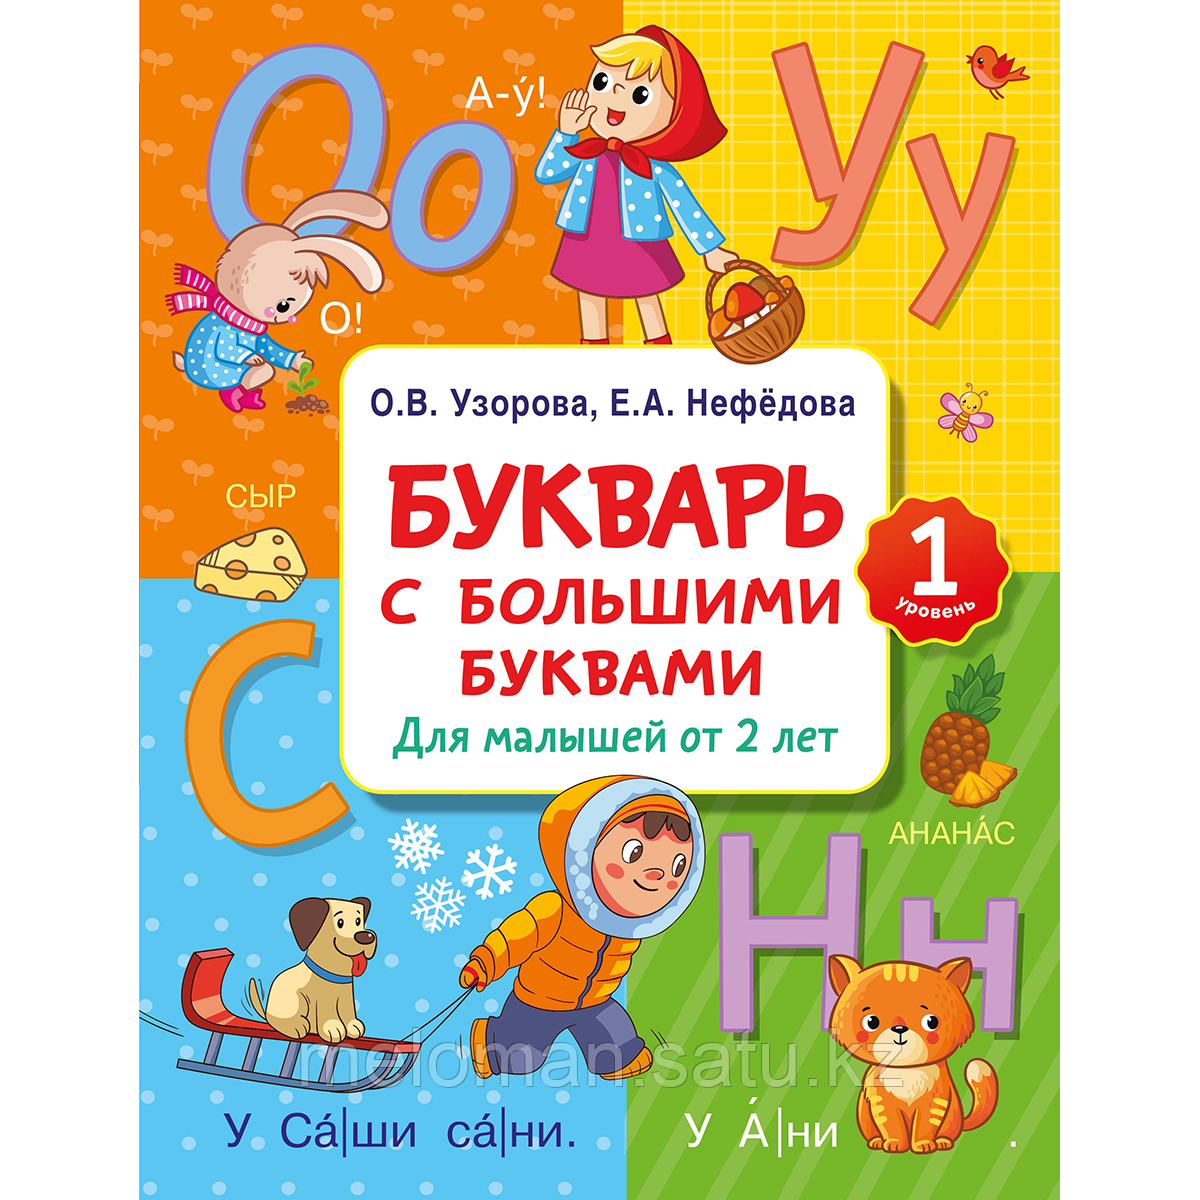 Узорова О. В., Нефедова Е. А.: Букварь с большими буквами для малышей от 2-х лет